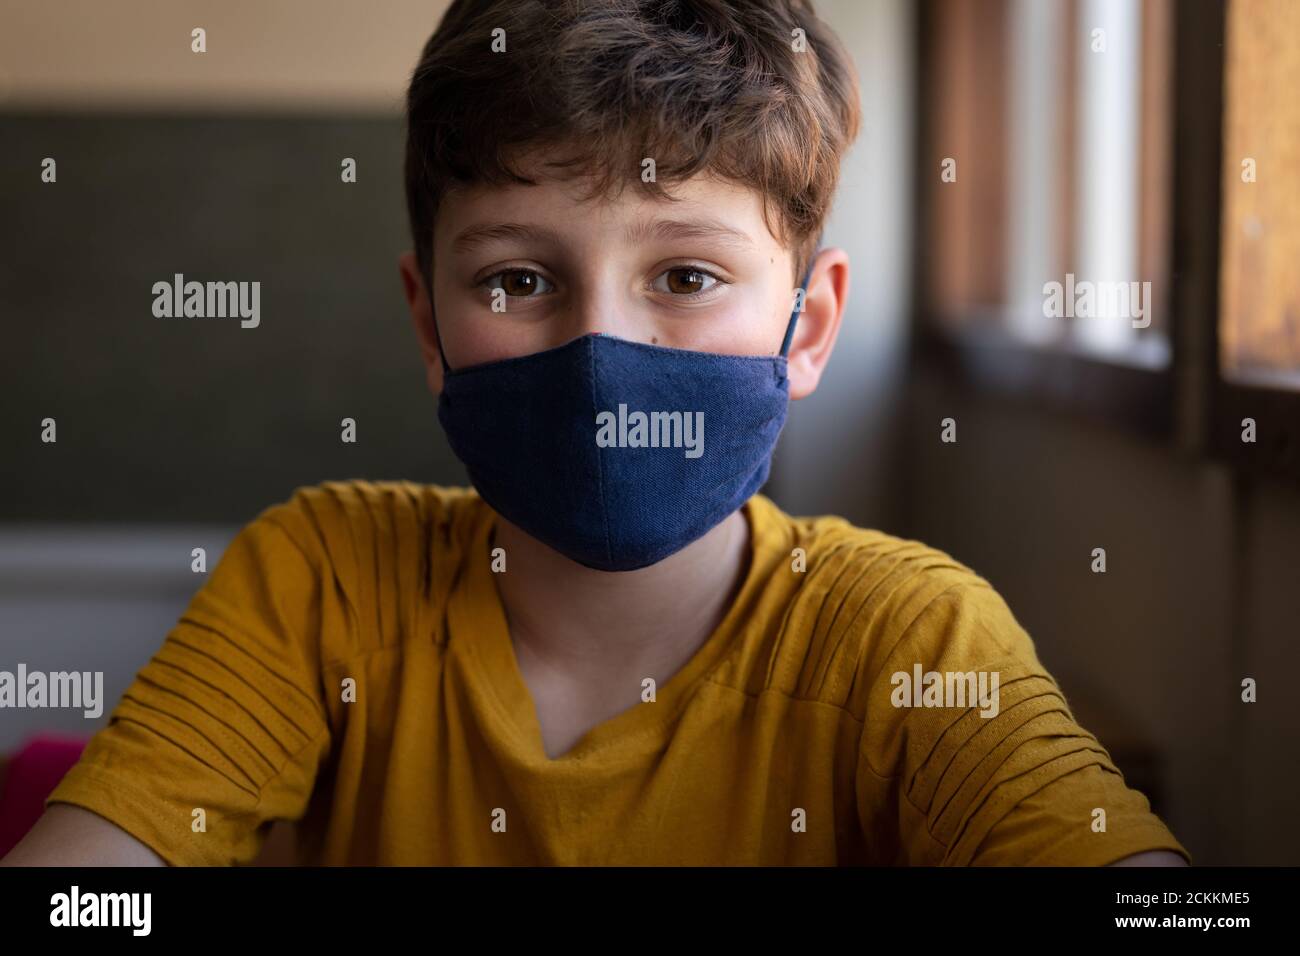 Portrait d'un garçon portant un masque facial à l'école Banque D'Images